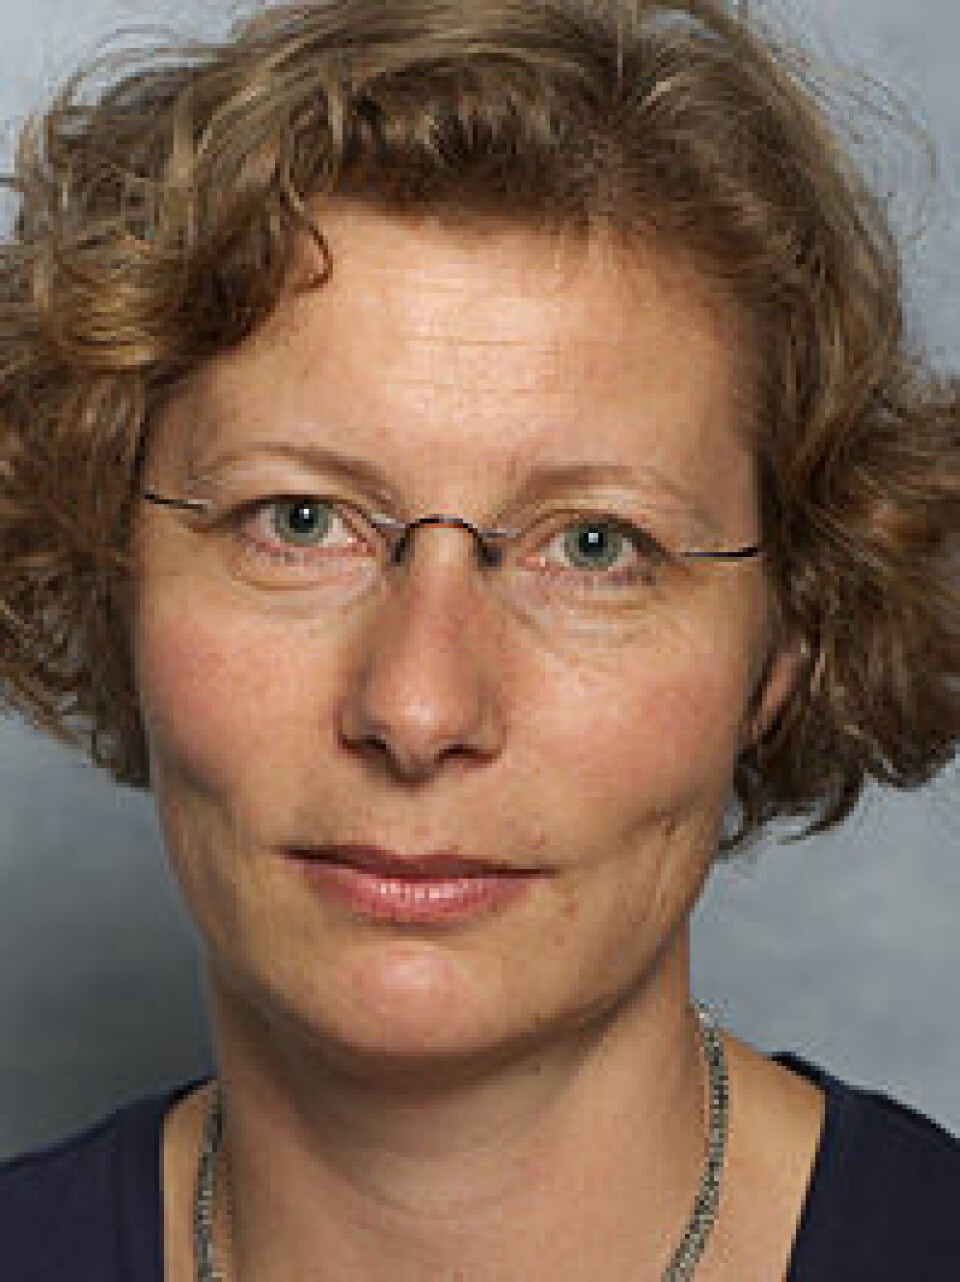 Helle Knutsen ved Folkehelseinstituttet har liten tro på at svetting kan fjerne miljøgift fra kroppen. (Arkivfoto: Folkehelseinstituttet)